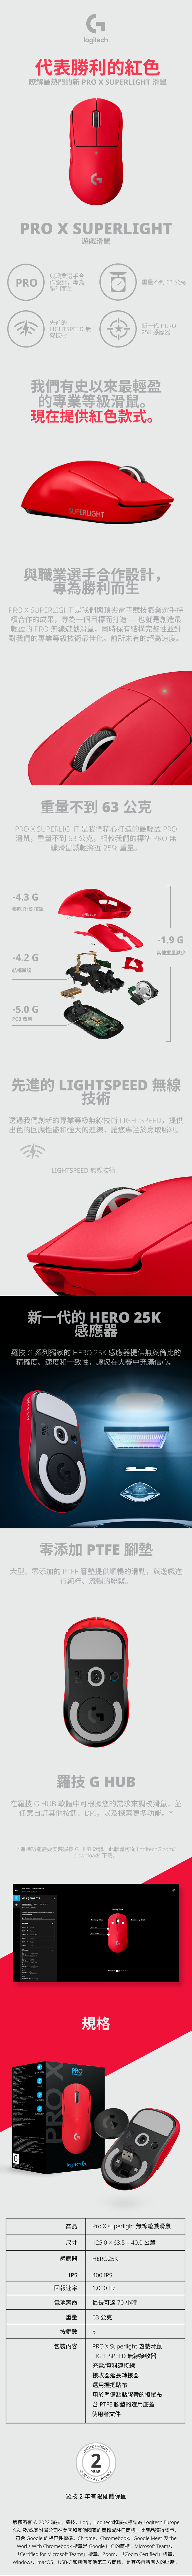 Clogech代表勝利的紅色瞭解最熱門的新 PRO  SUPERLIGHT 滑鼠PRO X SUPERLIGHT遊戲滑鼠PRO與職業選手合作設計,專為重量不到 63 公克勝利生先進的新一代 HERO 無線技術25K 感應器我們有史以來最輕盈的專業等級滑鼠。現在提供紅色款式。SUPERLIGHT與職業選手合作設計,專為勝利而生PRO X SUPERLIGHT 是我們與頂尖電子競技職業選手持續合作的成果,專為一個目標而打造也就是創造最輕盈的 PRO 無線遊戲滑鼠,同時保有結構完整性並針對我們的專業等級技術最佳化。前所未有的超高速度。重量不到 63 公克PRO X SUPERLIGHT 是我們精心打造的最輕盈 PRO滑鼠,重量不到63公克,相較我們的標準 PRO 無線滑鼠減輕將近25% 重量。4.3 G移除 RHS 按鈕SUPERLIGHT4.2 G結構微調-5.0 GPCB 改善-1.9 G其他重量減少先進的 LIGHTSPEED 無線技術透過我們創新的專業等級無線技術 LIGHTSPEED,提供出色的回應性能和強大的連線,讓您專注於贏取勝利。LIGHTSPEED 無線技術新一代的 HERO 25K感應器羅技 G 系列獨家的 HERO 25K 感應器提供無與倫比的精確度速度和一致性,讓您在大賽中充滿信心。SUPERLIGHTPRO零添加 PTFE 腳墊大型、零添加的 PTFE 腳墊提供順暢的滑動,與遊戲進行純粹、流暢的聯繫。羅技 G HUB在羅技 G HUB 軟體中可根據您的需求來調校滑鼠,並任意自訂其他按鈕、,以及探索更多功能。**進階功能需要安裝羅技GHUB 軟體。此軟體可從 LogitechG.com/downlods 下載。PER-PROFILE DESKTOP AssignmentsCOMMANDS KEYS ACTIONSMACROS SYSTEM      to  it Search for a RedoWindows of AccessWindows Windows  dialogLIGHTSPEEDPOWERPLAYSUPERLIGHTPRO XPROSUPERLIGHTlogitech Primary  DPI 規格 ClickDEFAULT G-SHIFTPROSecondary Click產品Pro X superlight 無線遊戲滑鼠尺寸 125.0 × 63.5 ×40.0 公釐感應器IPSHERO25K400 IPS1,000 Hz最長可達 70 小時回報速率電池壽命重量63公克按鍵數5包裝內容PRO X Superlight 遊戲滑鼠LIGHTSPEED 無線接收器充電/資料連接線接收器延長轉接器選用握把貼布用於準備黏貼膠帶的擦拭布含PTFE 腳墊的選用底蓋使用者文件LIMITEDQUALITYPRODUCT2YEARASSURANCE羅技2年有限硬體保固版權所有2022 羅技。羅技, Logi, Logitech羅技標誌為 Logitech EuropeS.A.及/或其附屬公司在美國和其他國家的商標或註冊商標。此產品獲得認證,符Google 的相容性標準。Chrome、Chromebook、Google Meet 與the合Works With Chromebook 標章是 Google LLC 的商標。Microsoft Teams、「Certified for Microsoft Teams標章、Zoom、「Zoom Certified」標章、Windows、macOS、USB-C 和所有其他第三方商標,是其各自所有人的財產。